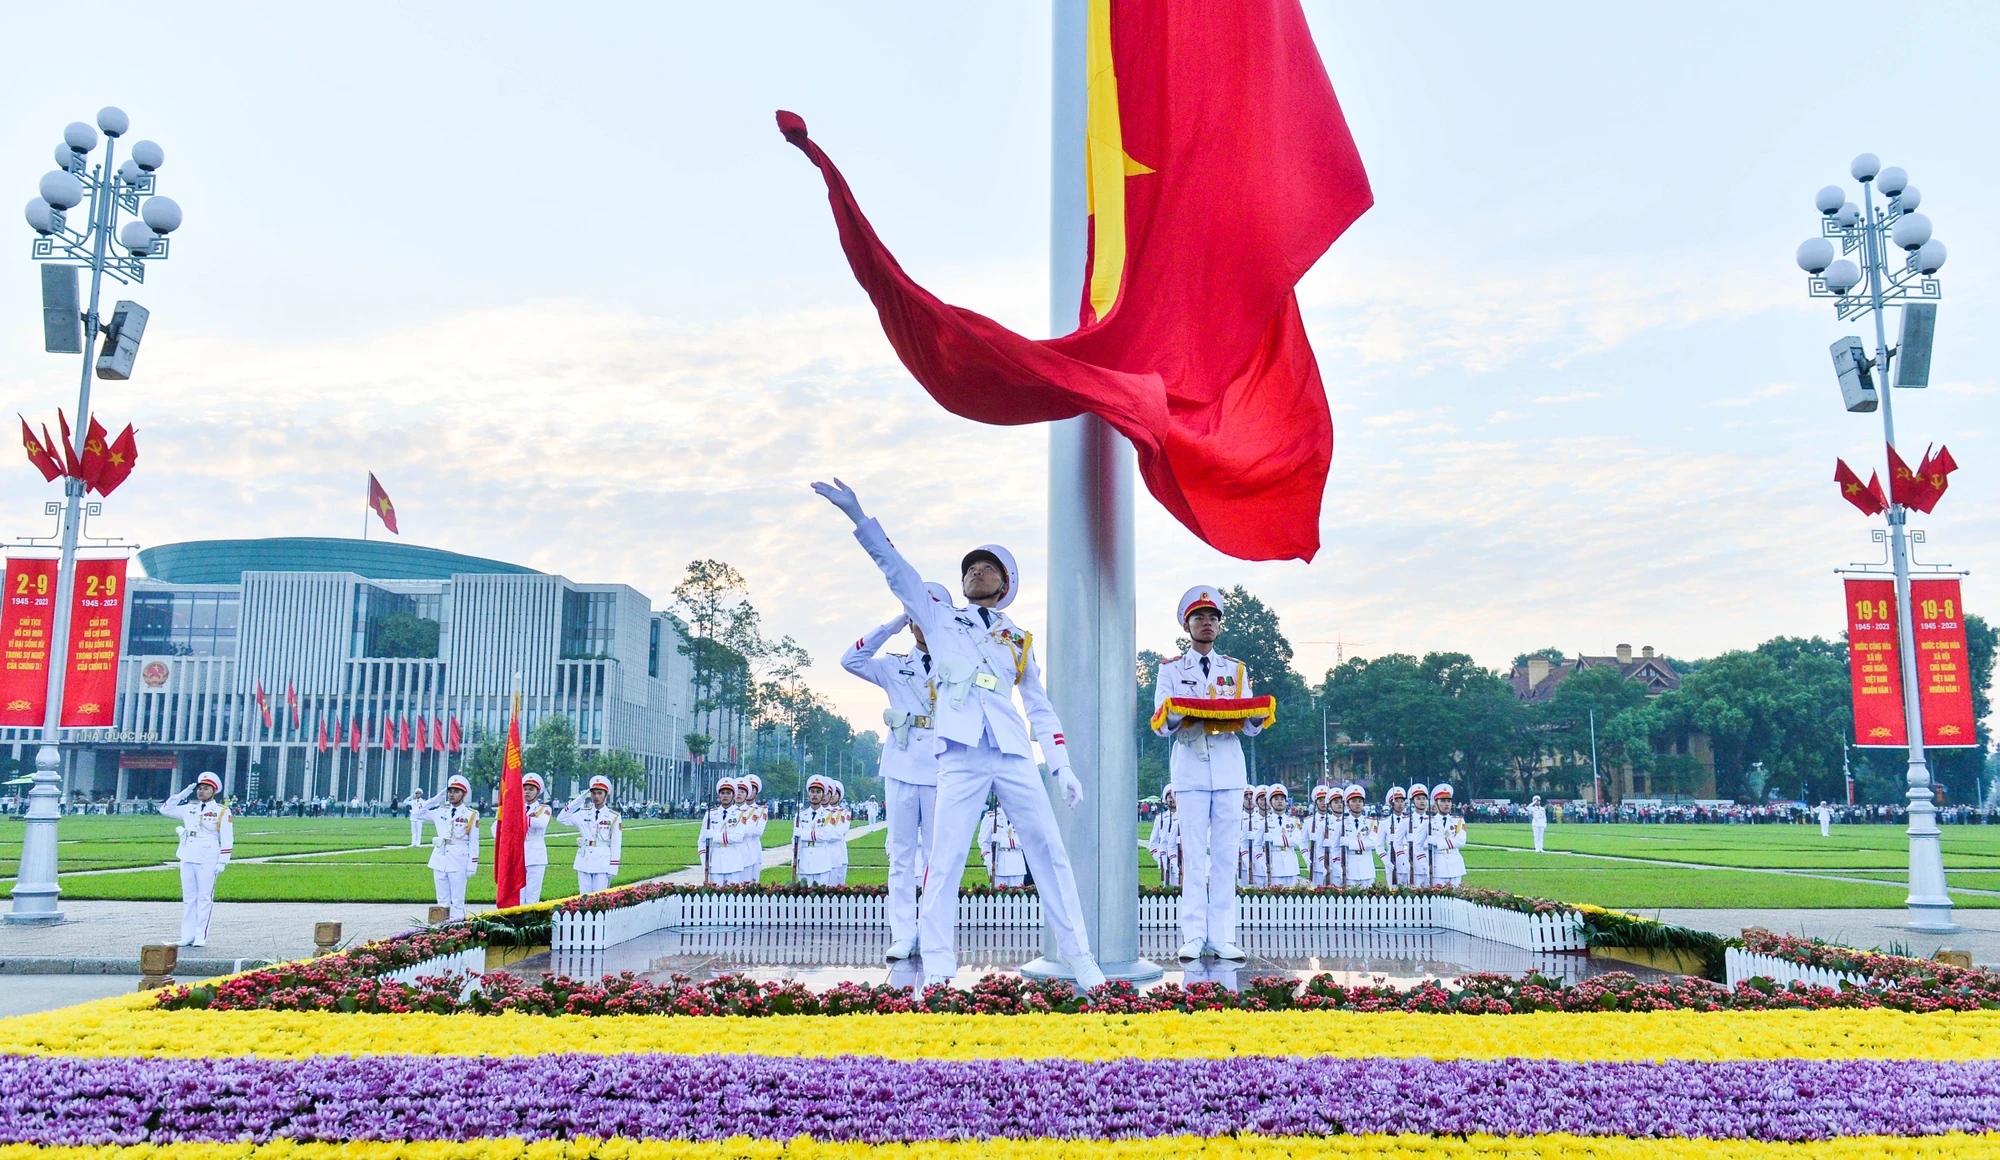 Quốc kỳ tung bay trong nắng Ba Đình. Ảnh VTC news.jpg